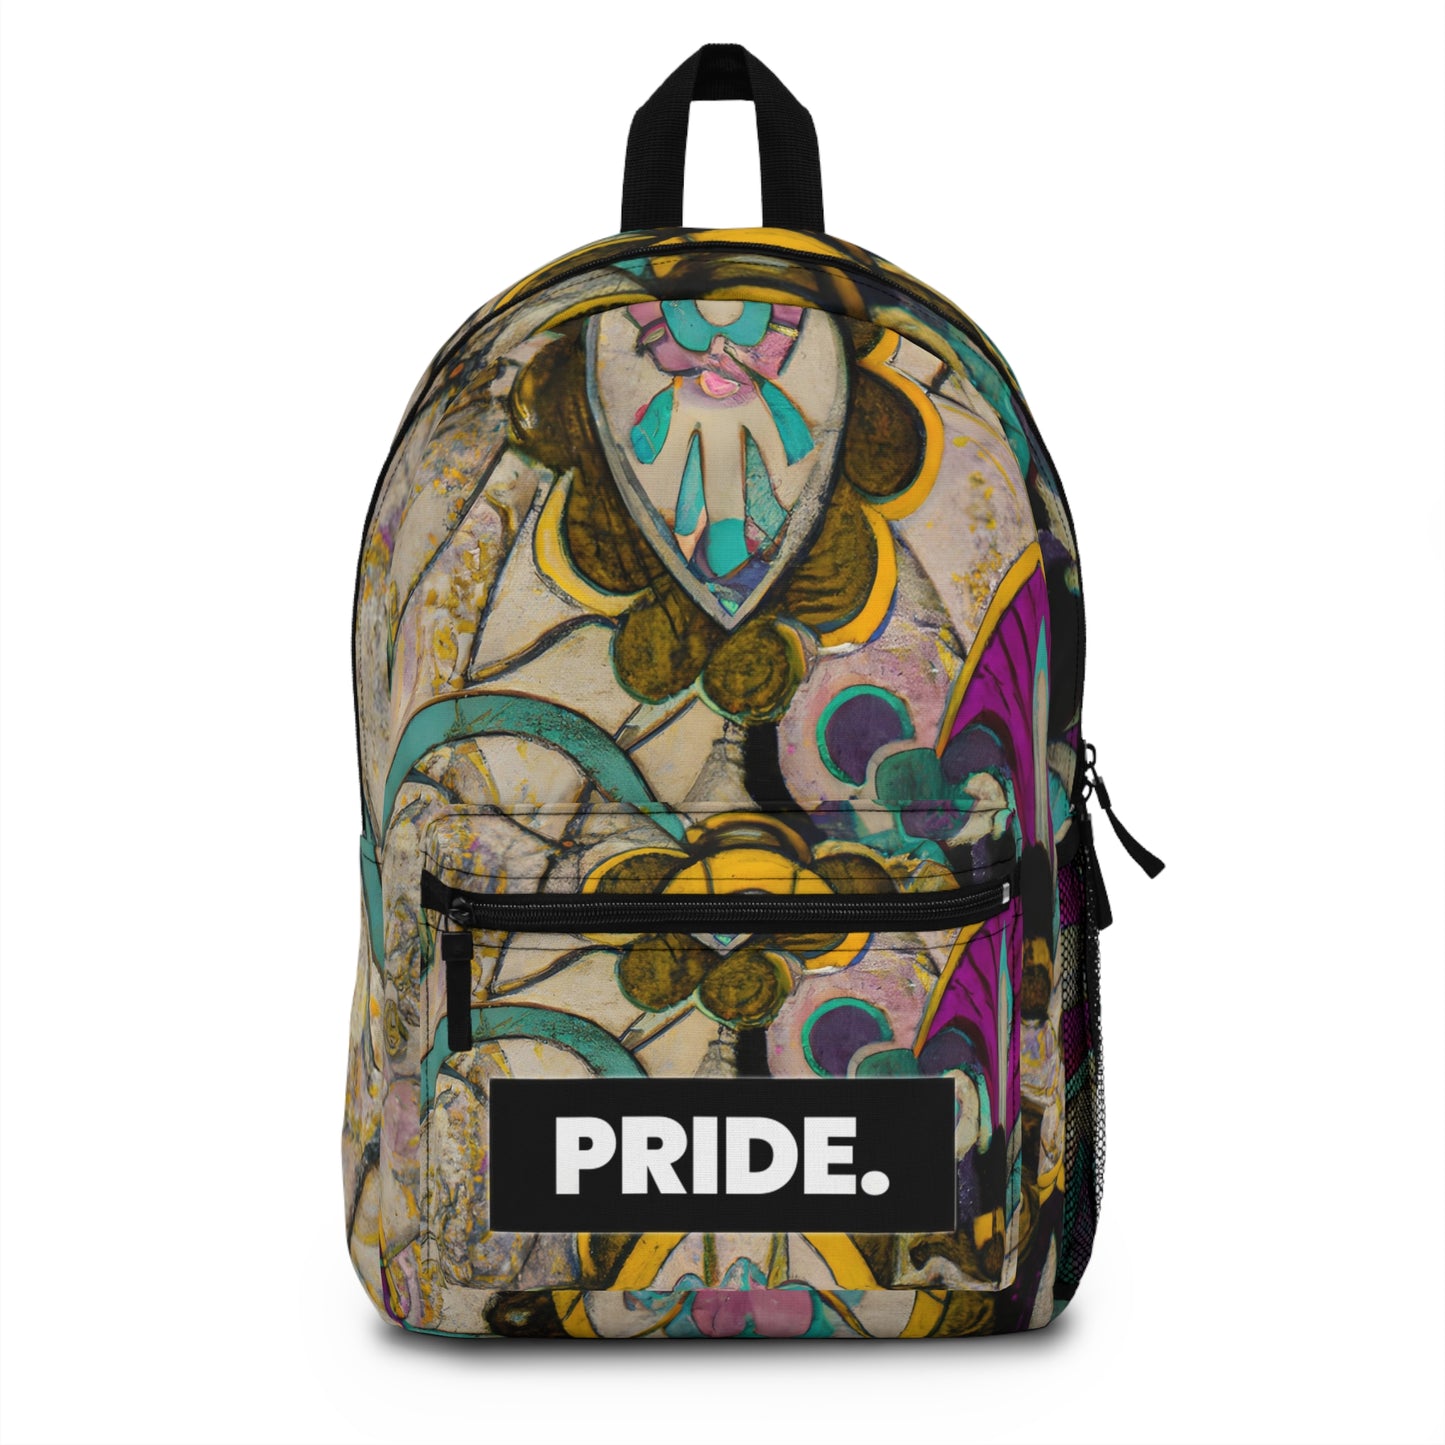 RubyRouge - Gay Pride Backpack